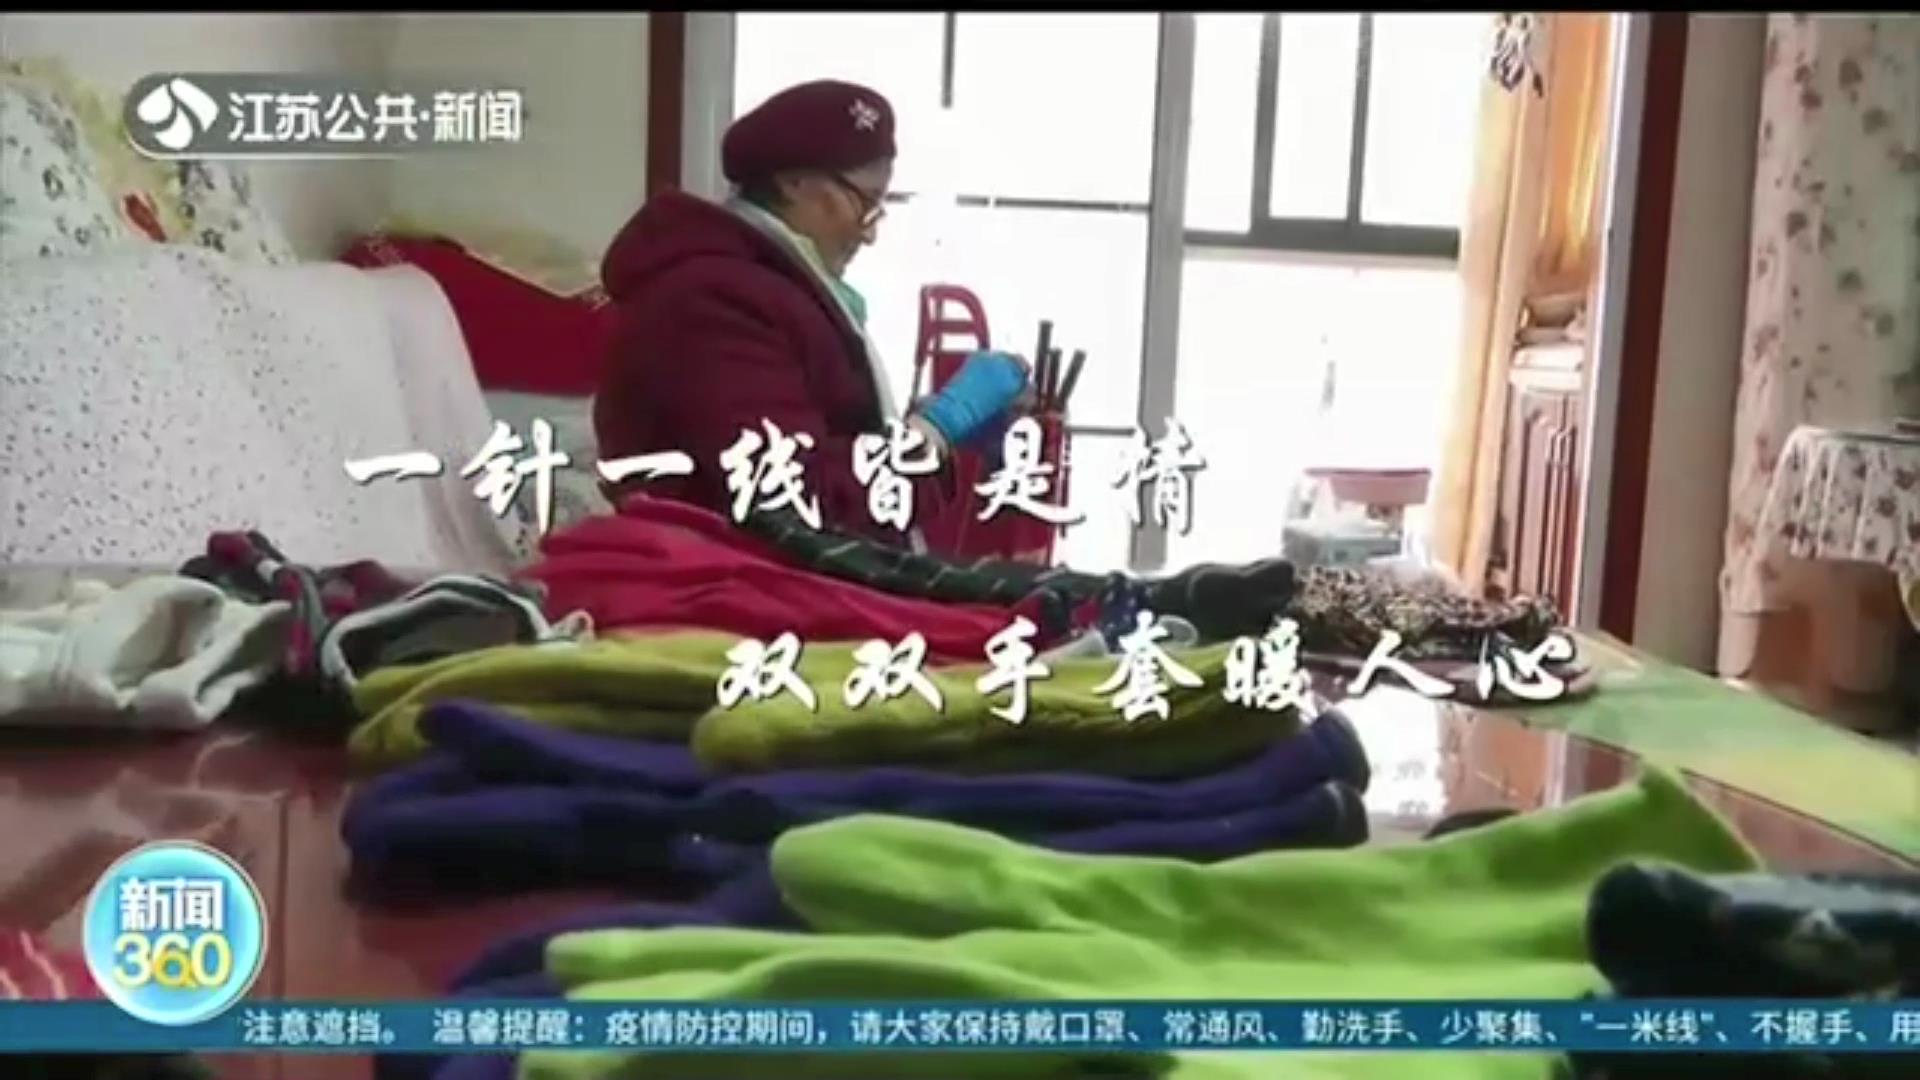 举动暖心！南京78岁奶奶用爱缝制六百多副手套，还无偿送给有需要的人